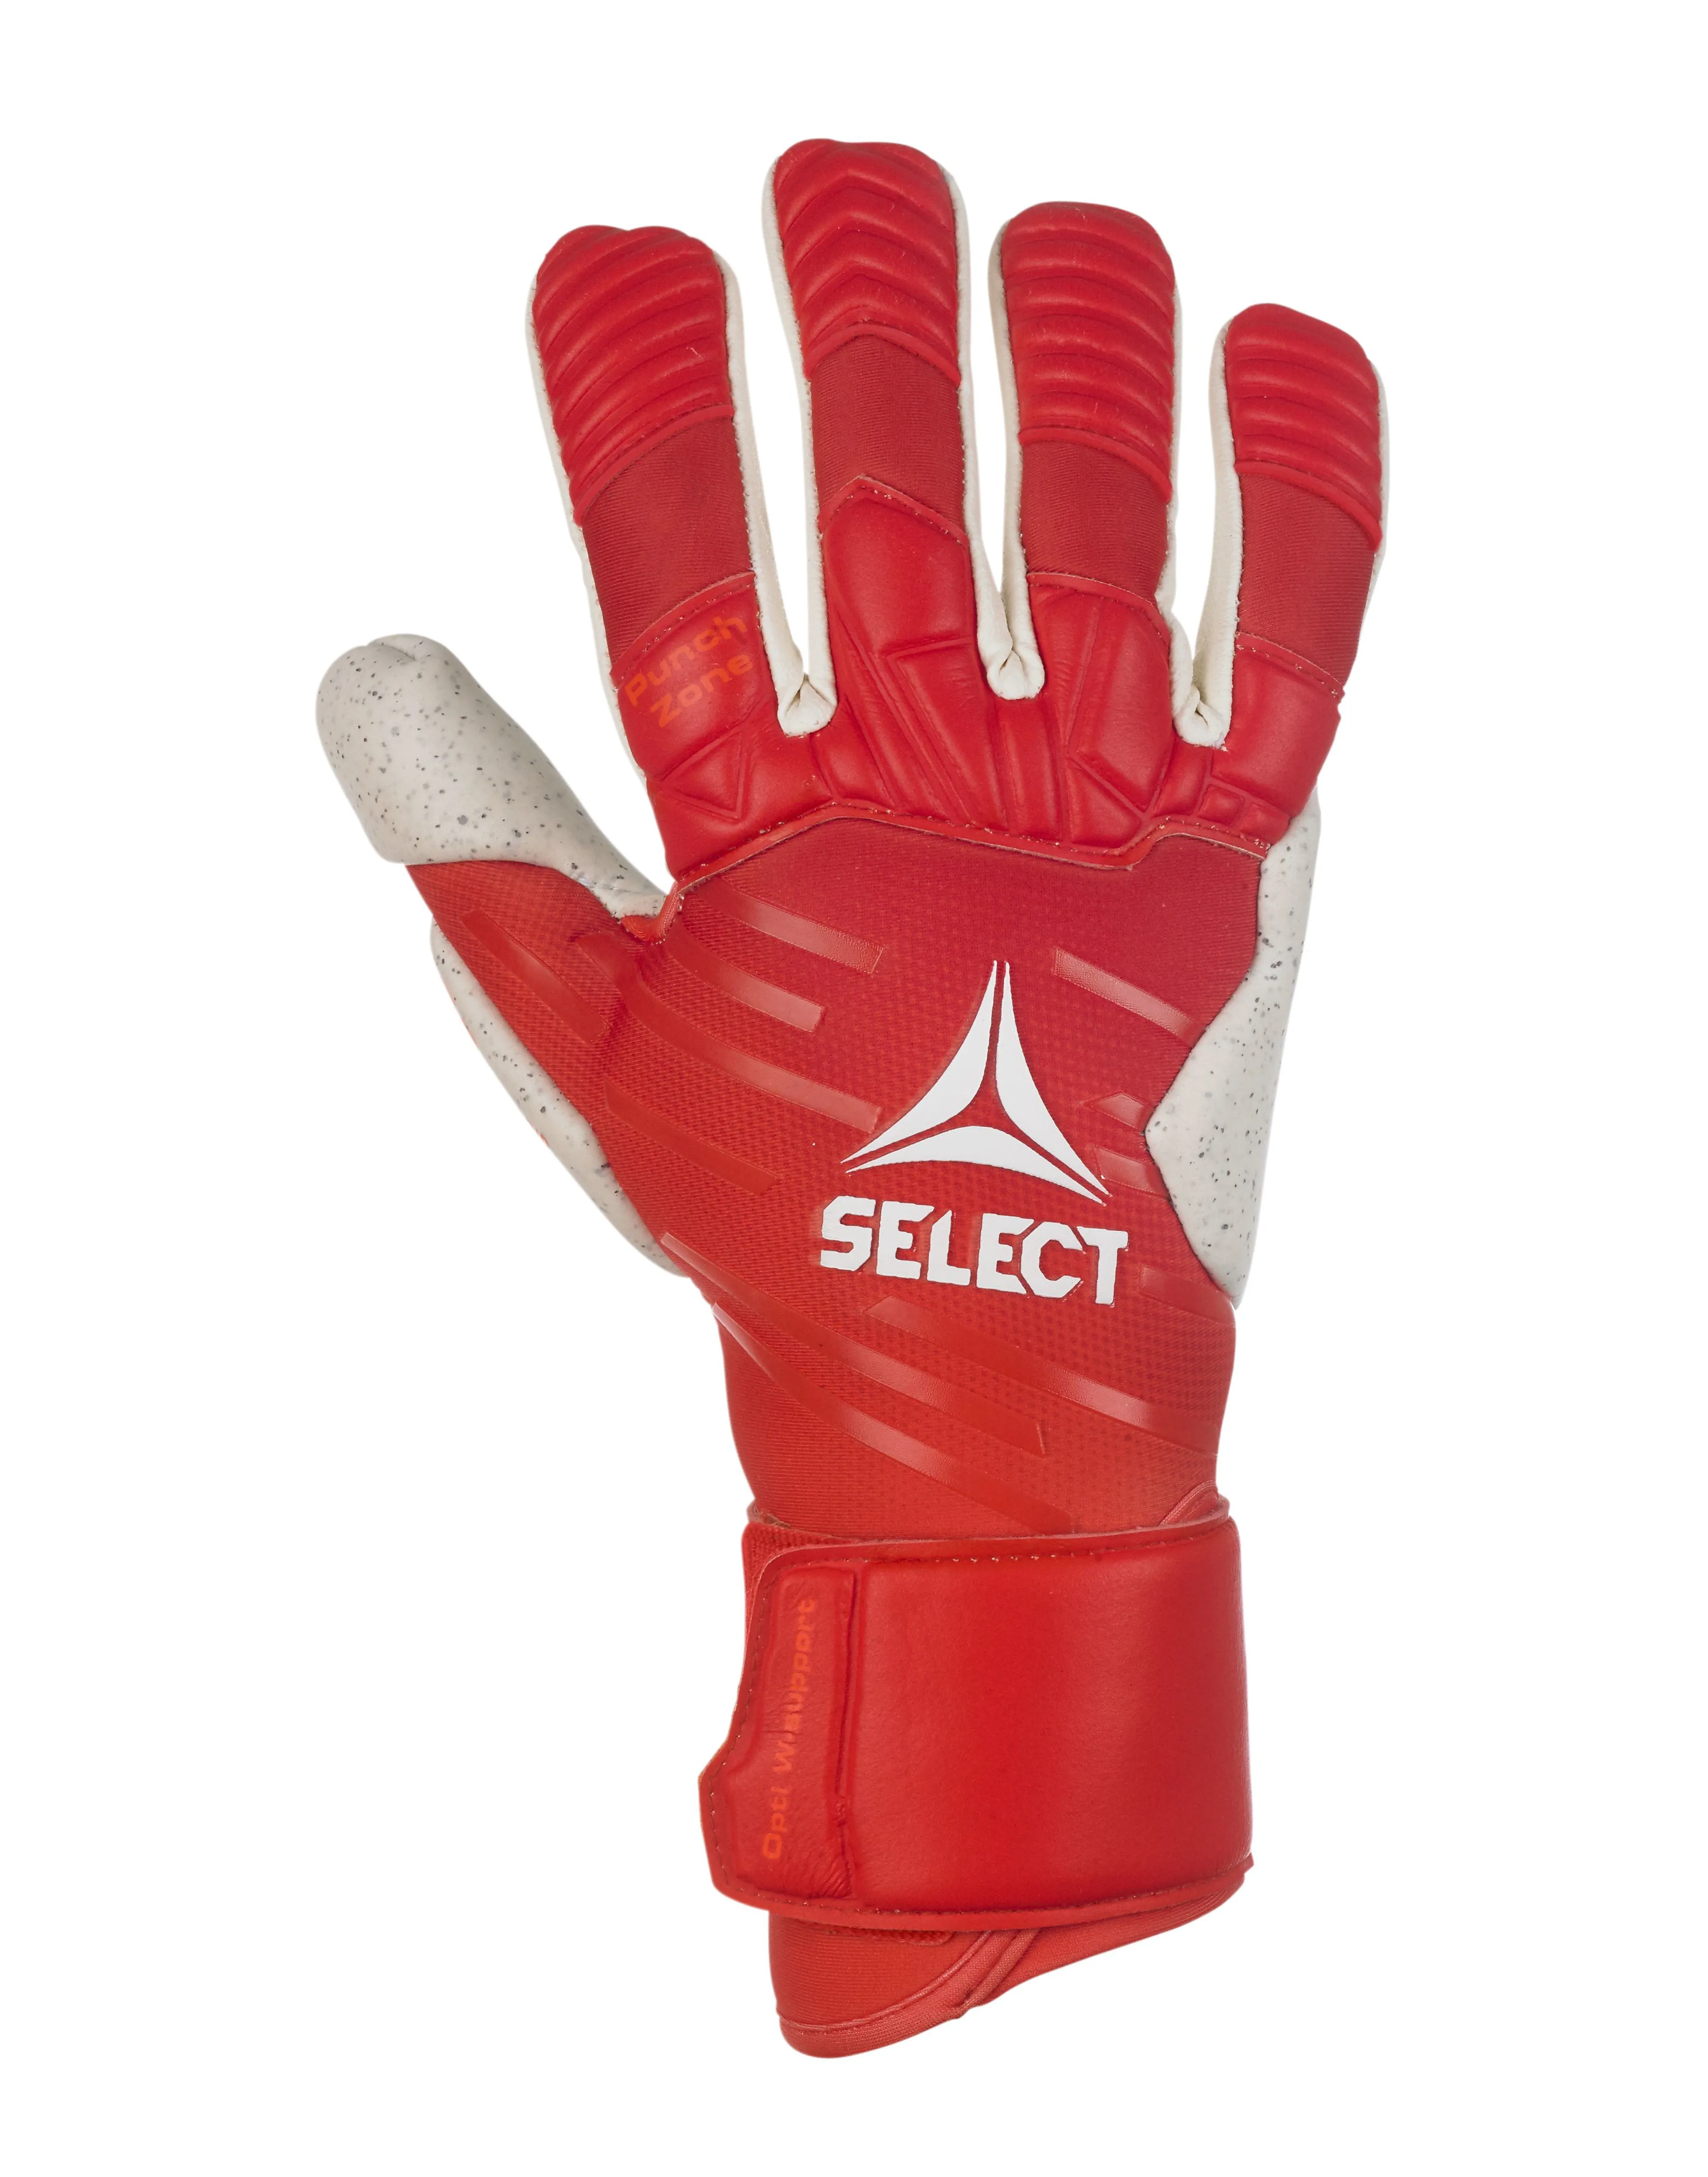 GK gloves 88 Pro Grip v23